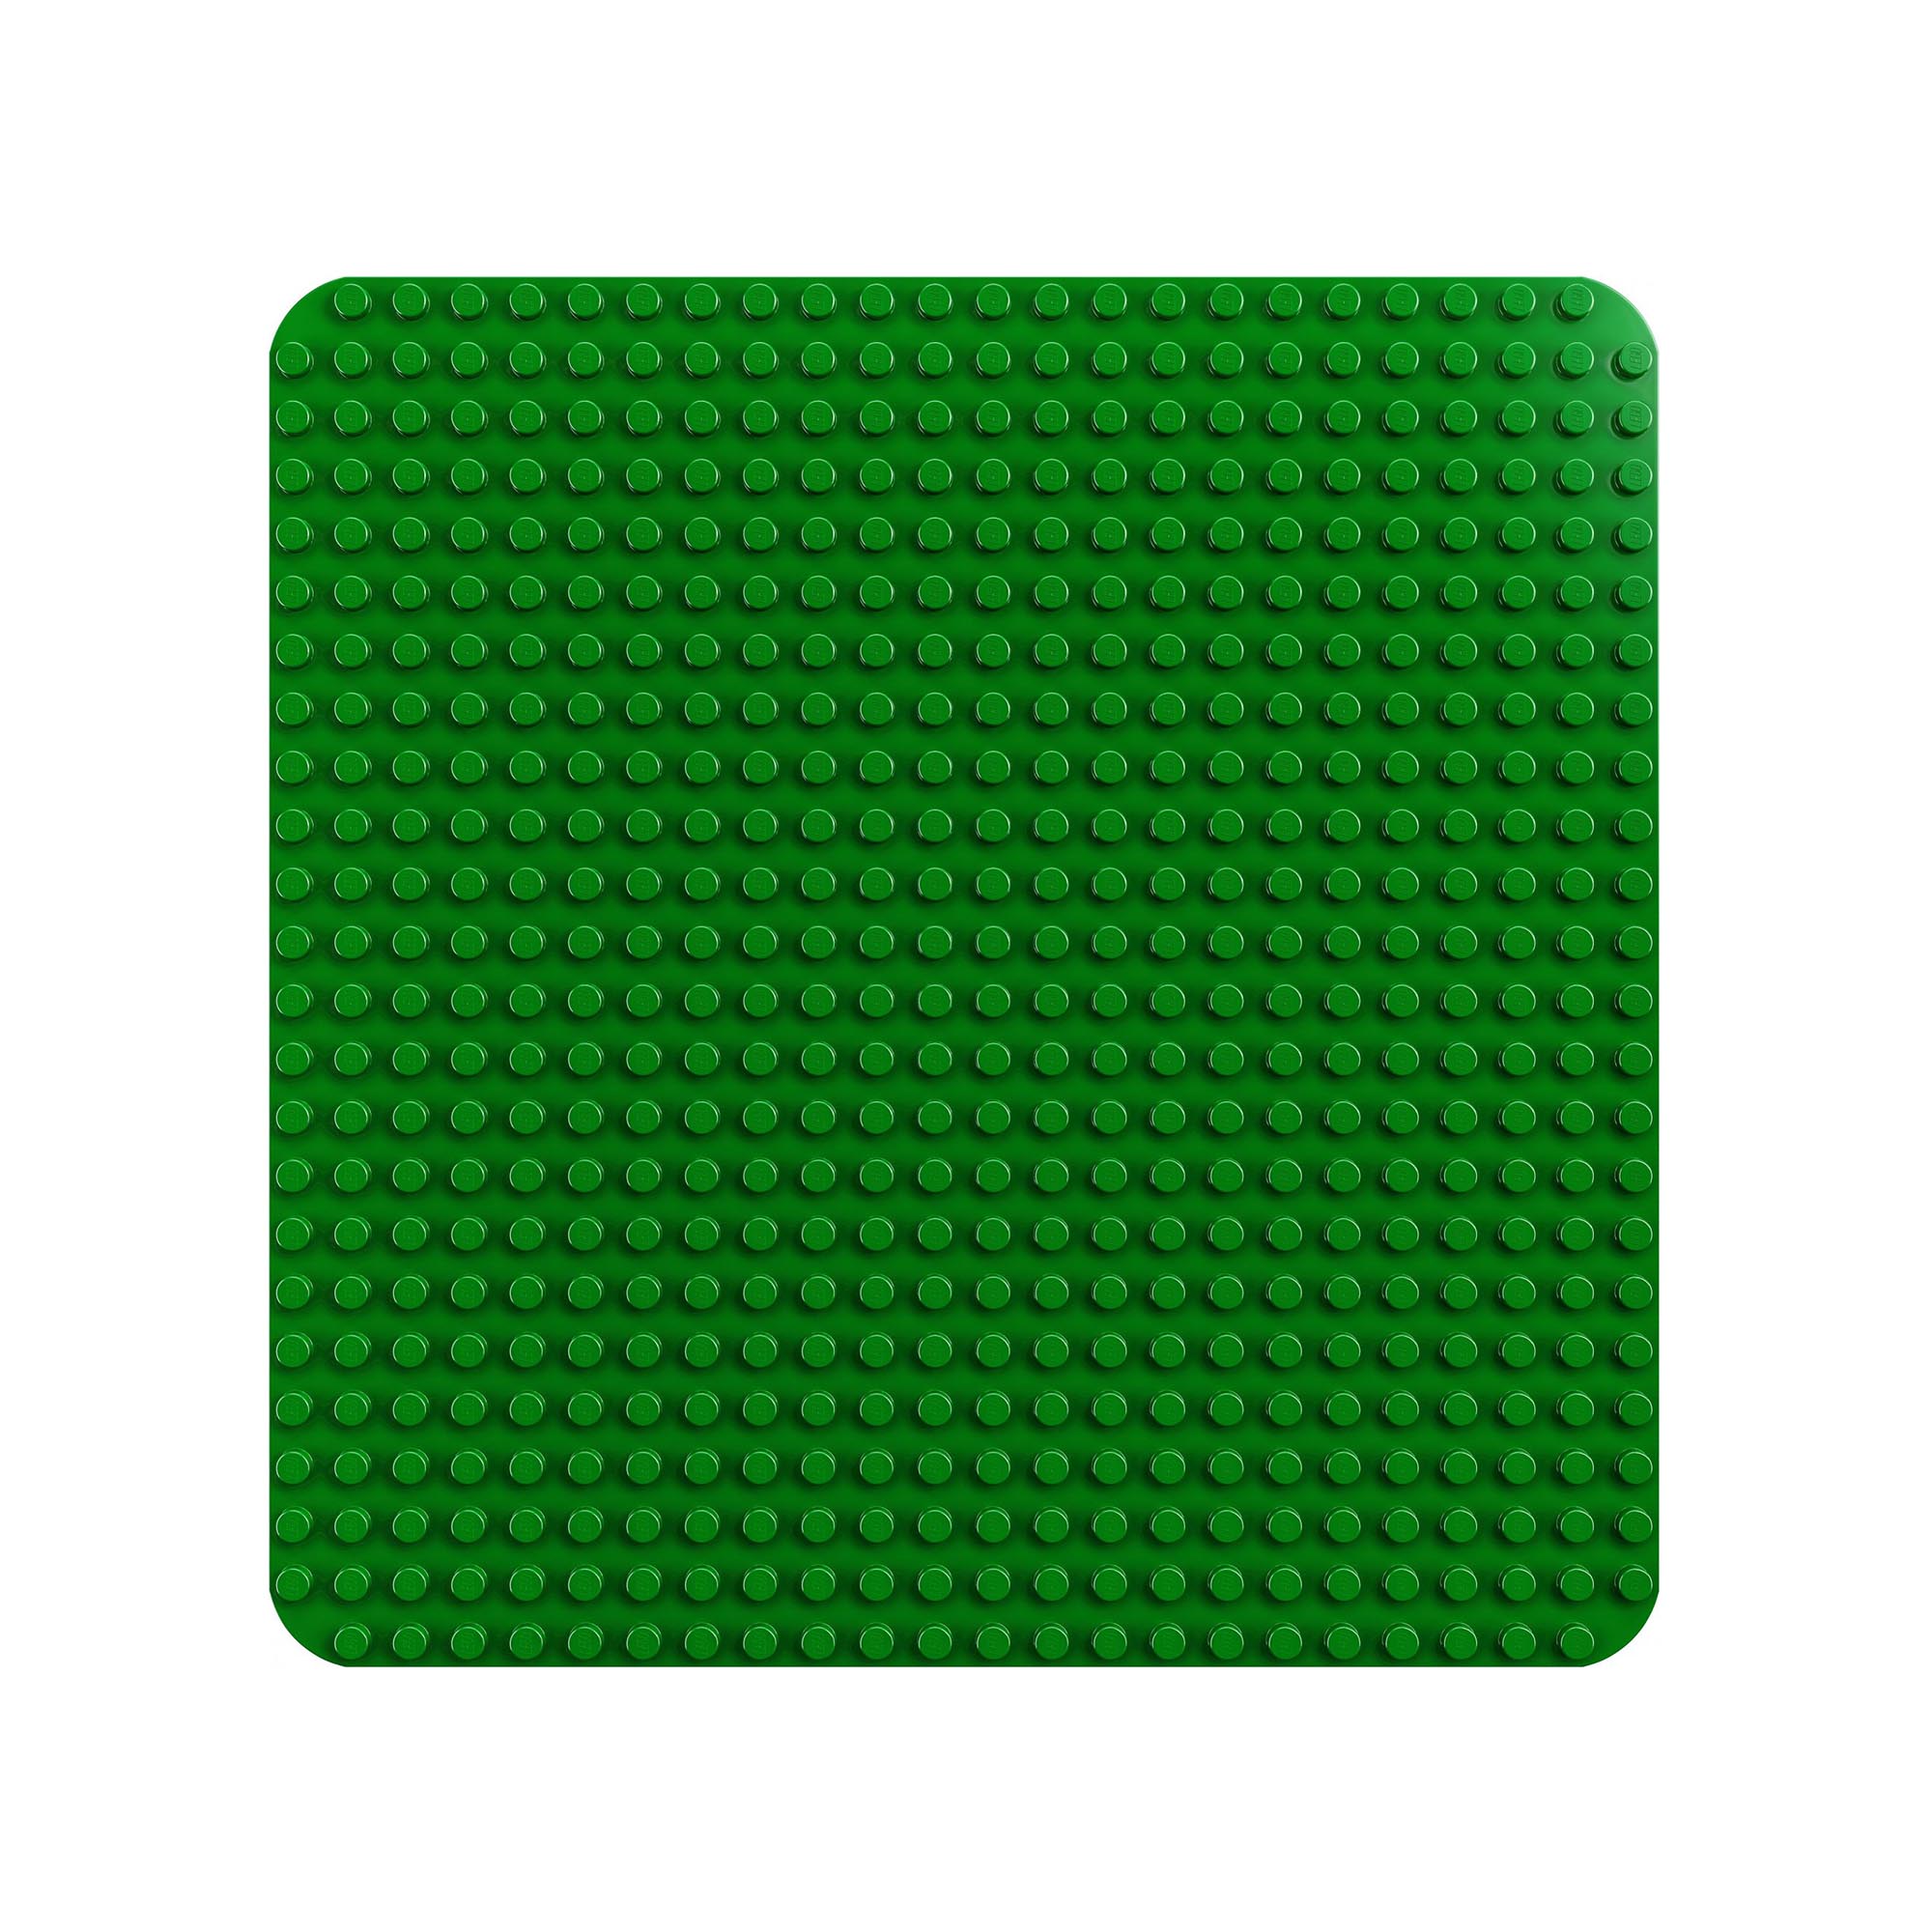 LEGO 10980 DUPLO Base Verde, Tavola Classica per Mattoncini, Piattaforma Giocatt 10980, , large